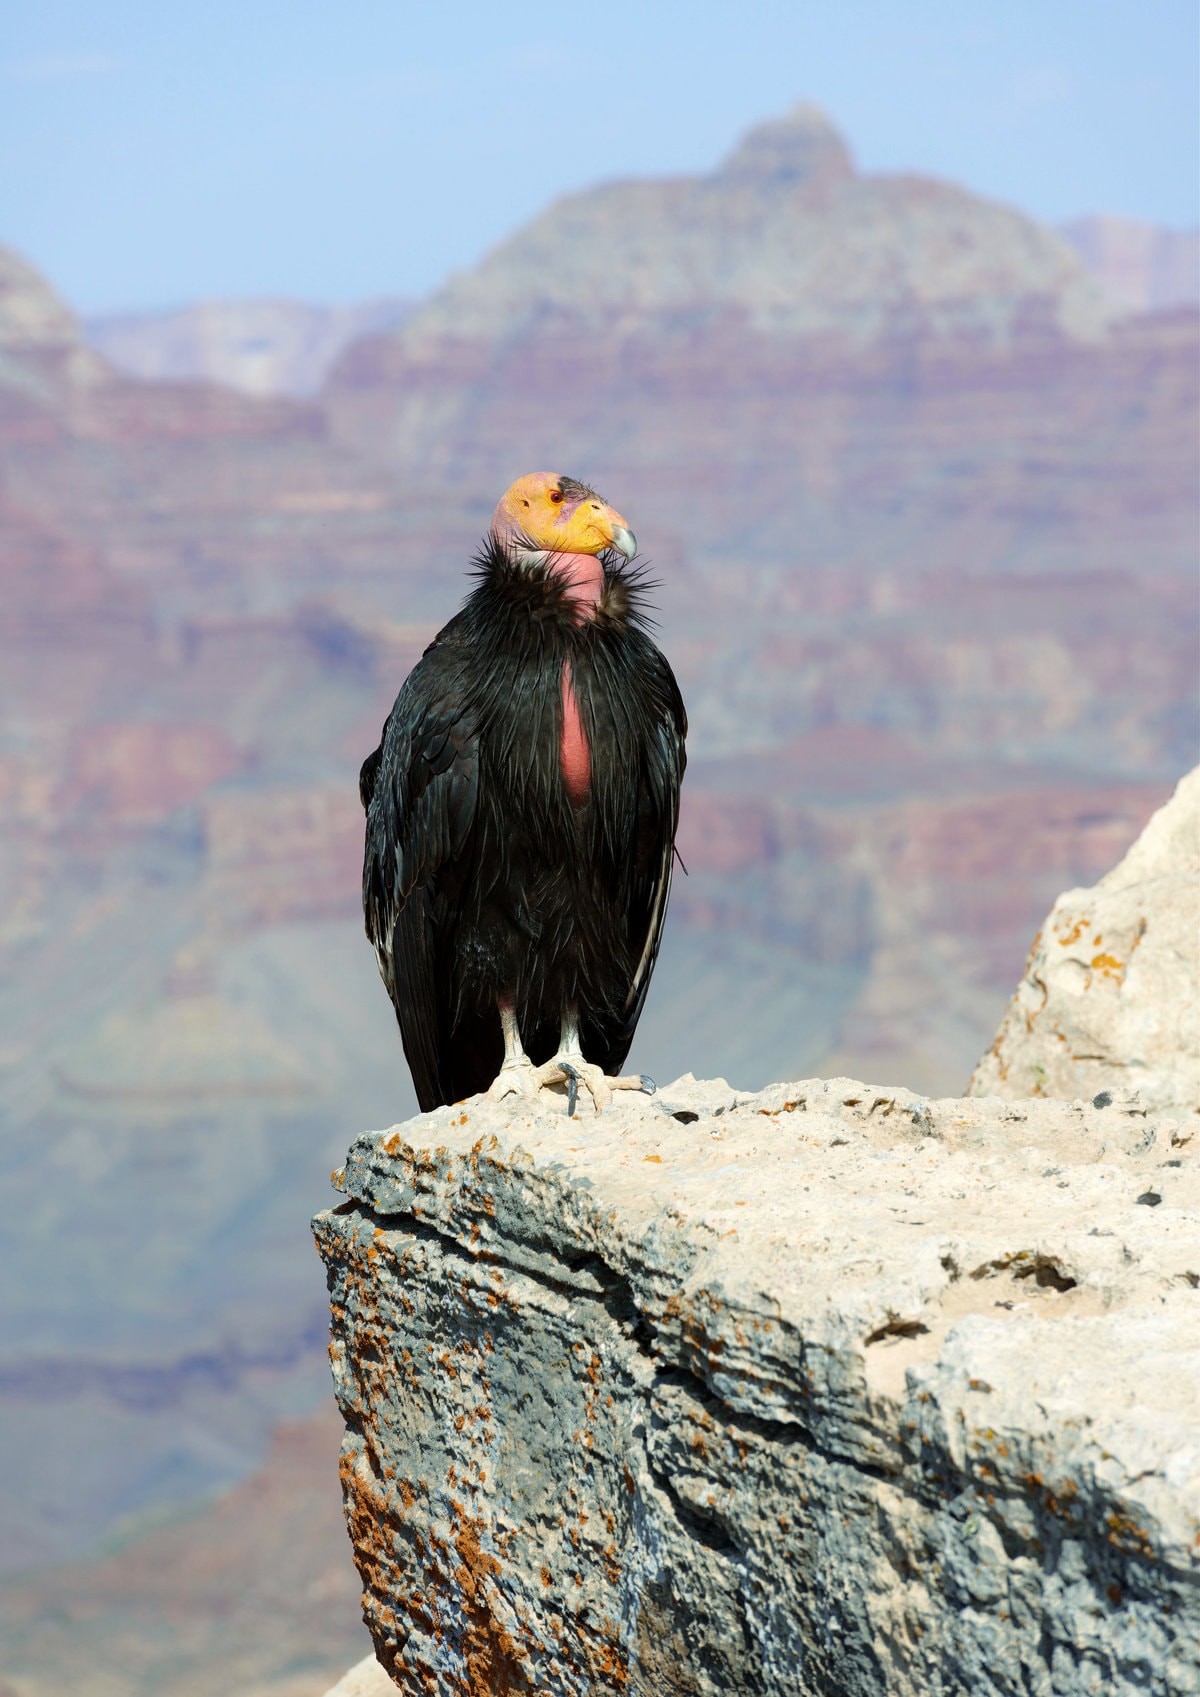 A California Condor at Grand Canyon National Park in Arizona